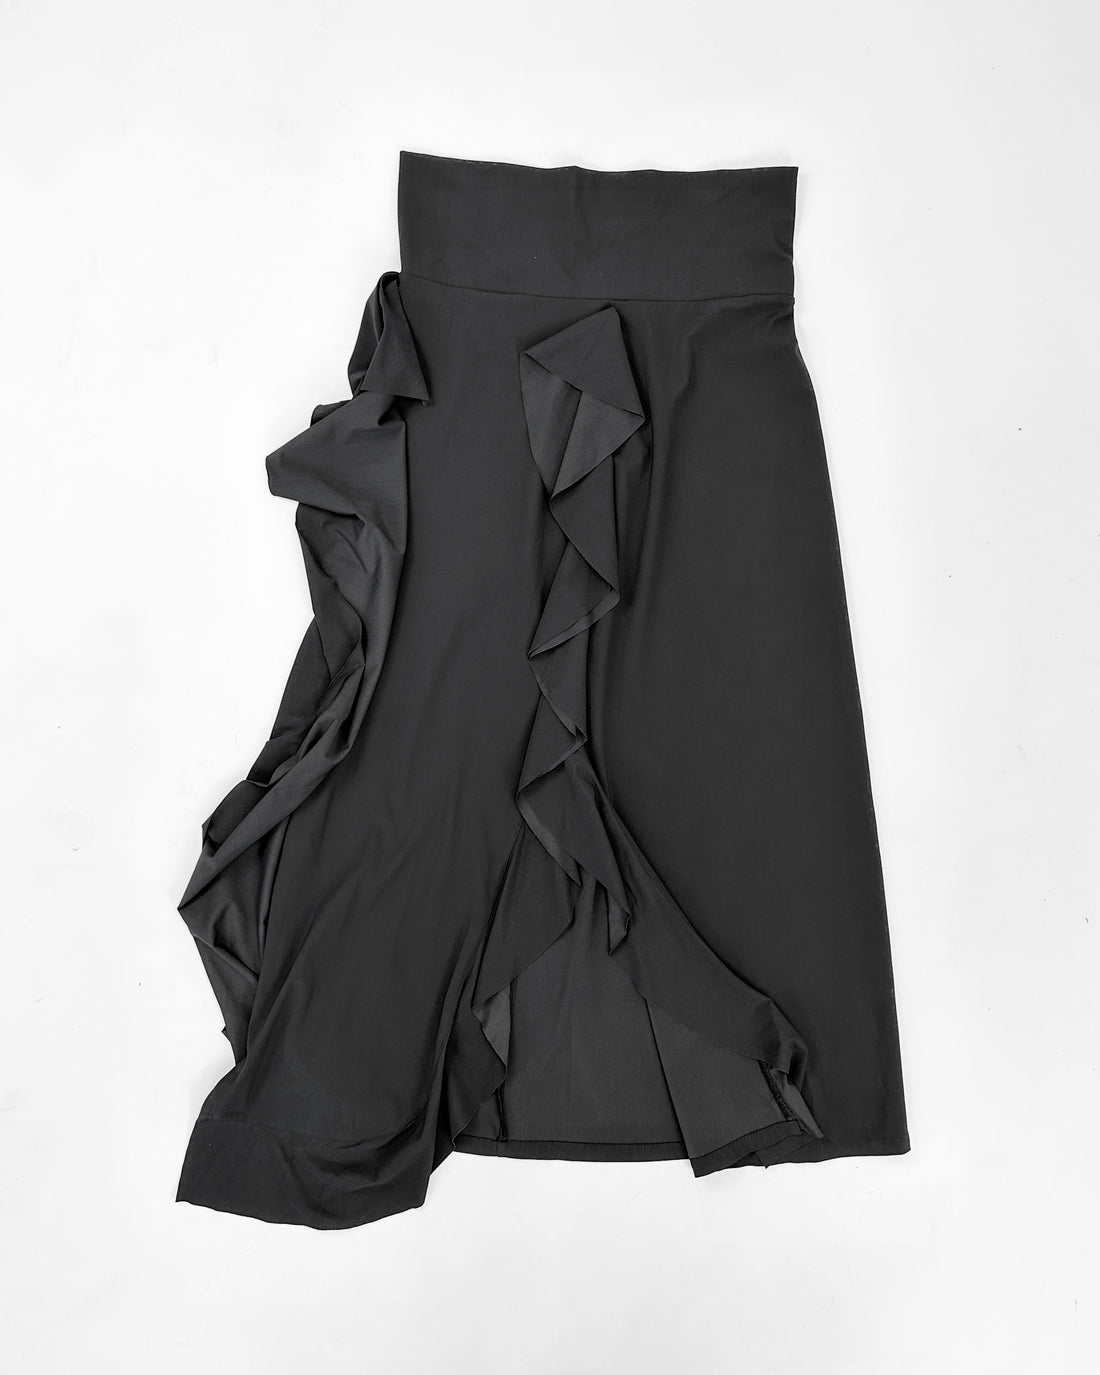 Marithé Francois Girbaud Black Fluid Skirt 2000's